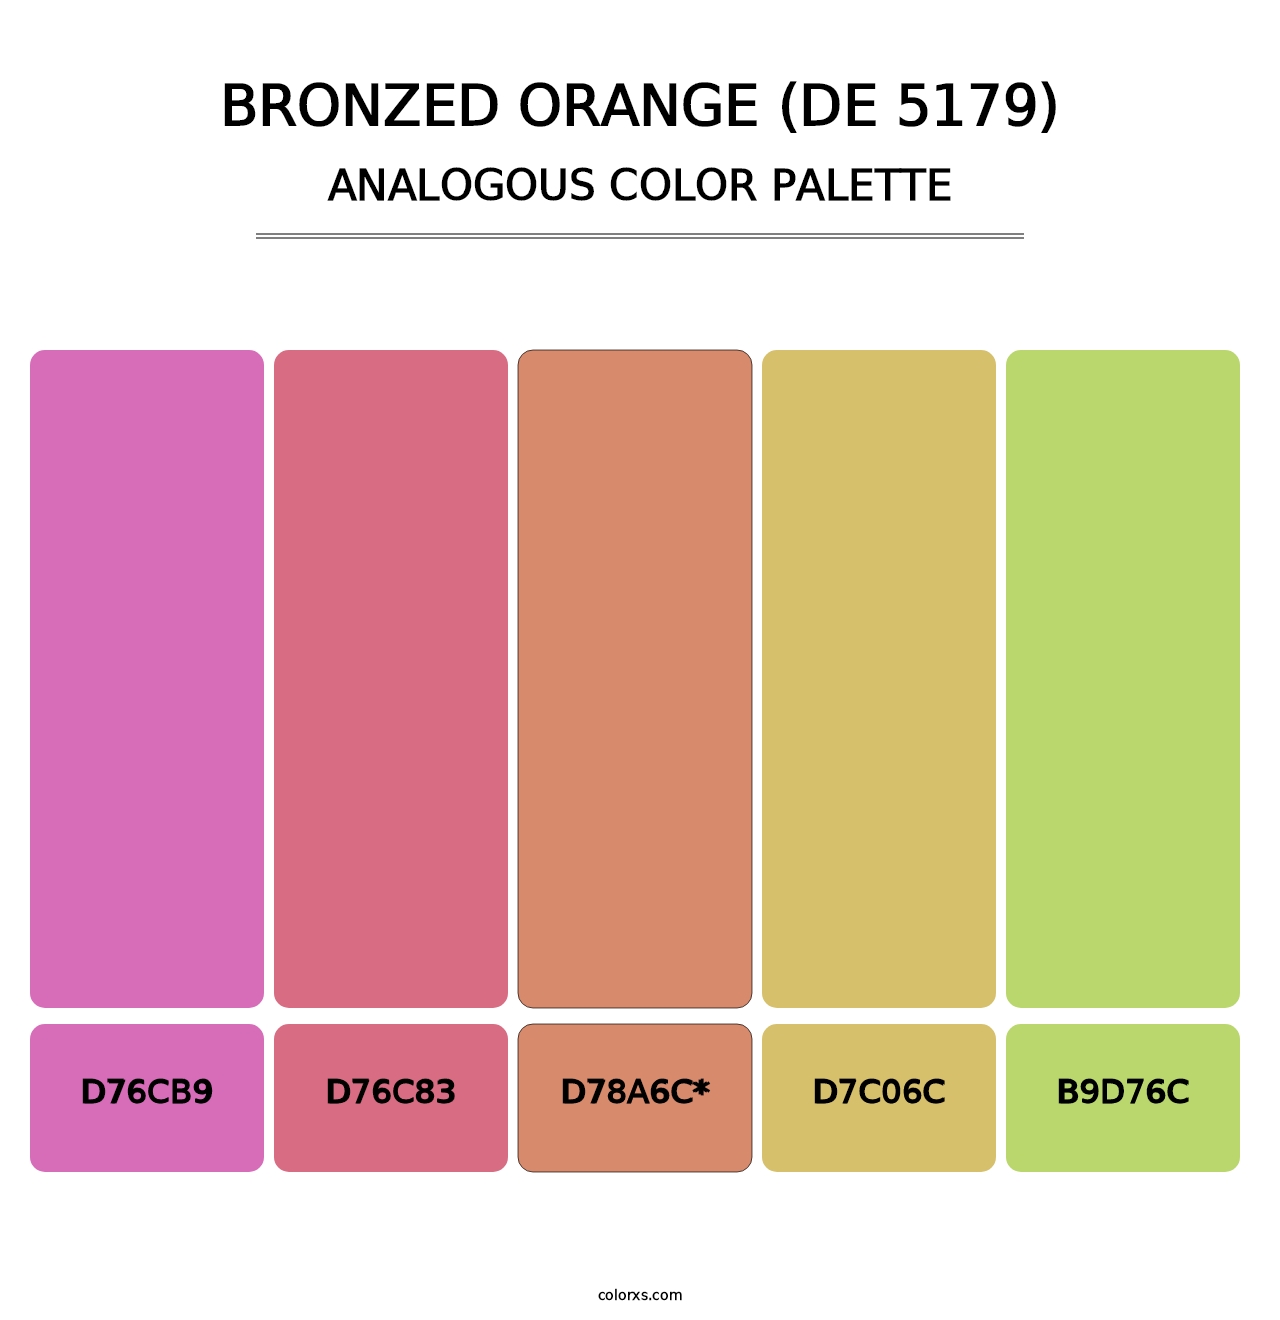 Bronzed Orange (DE 5179) - Analogous Color Palette